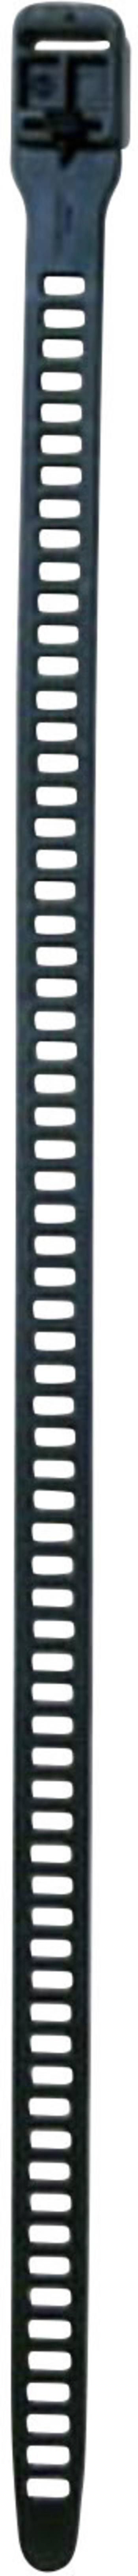 HellermannTyton 115-28590 SOFTFIX-XL-TPU-BKIII sťahovacie pásky 580 mm 28 mm čierna rozpojiteľné, veľmi flexibilné, so s